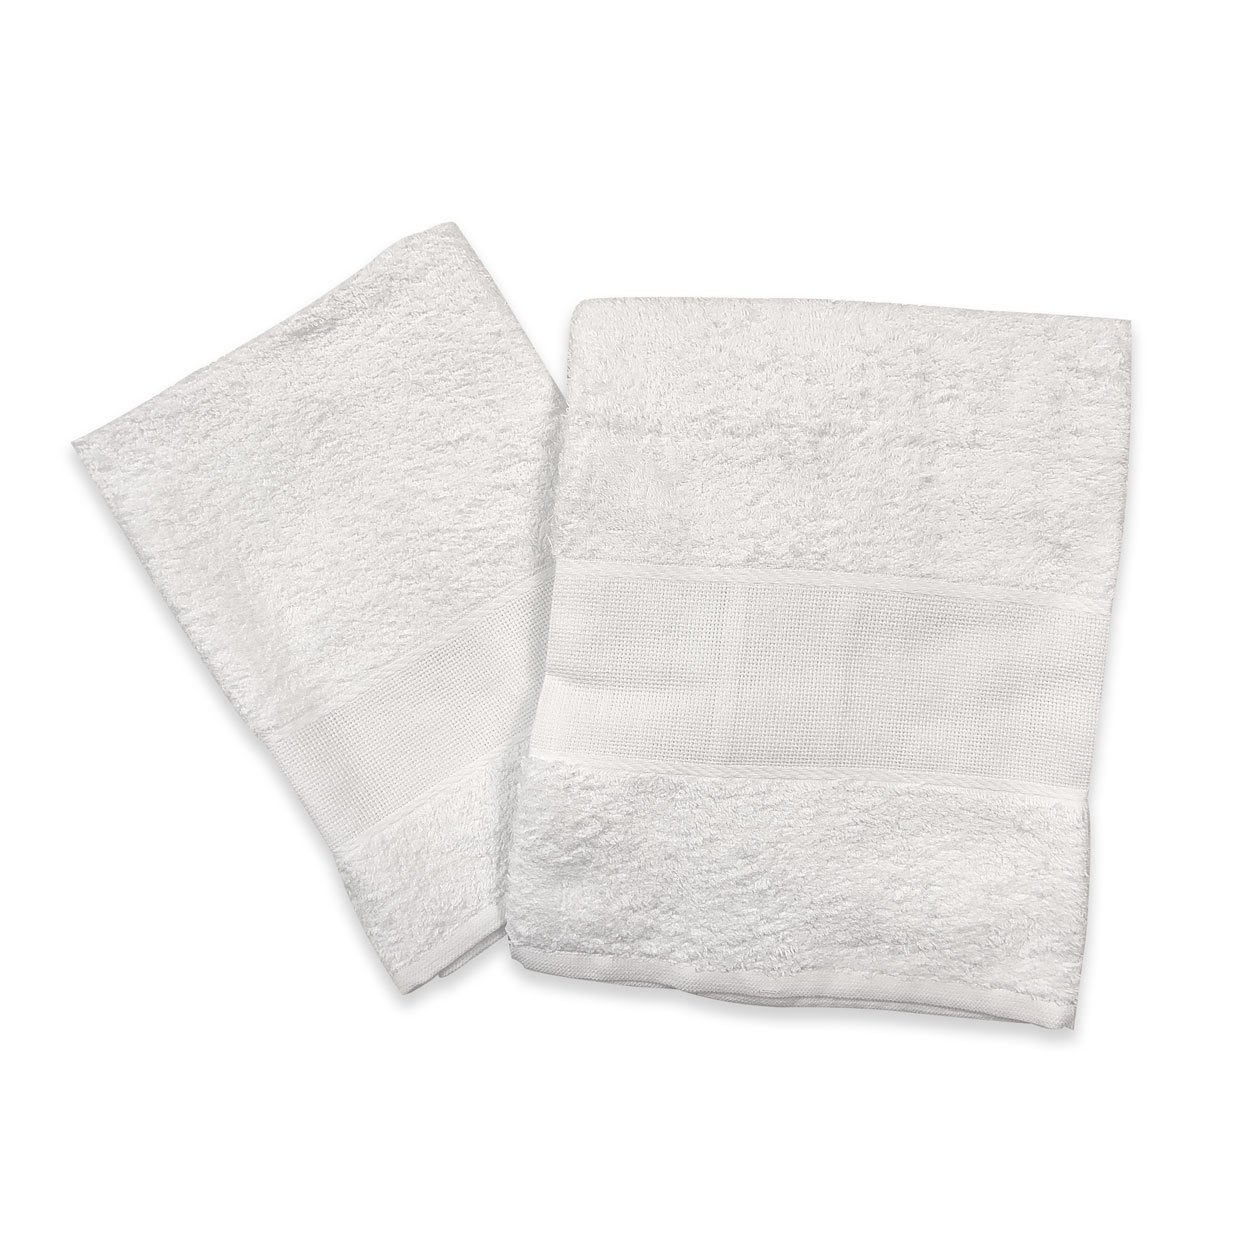 coppiola-di-asciugamani-bianchi